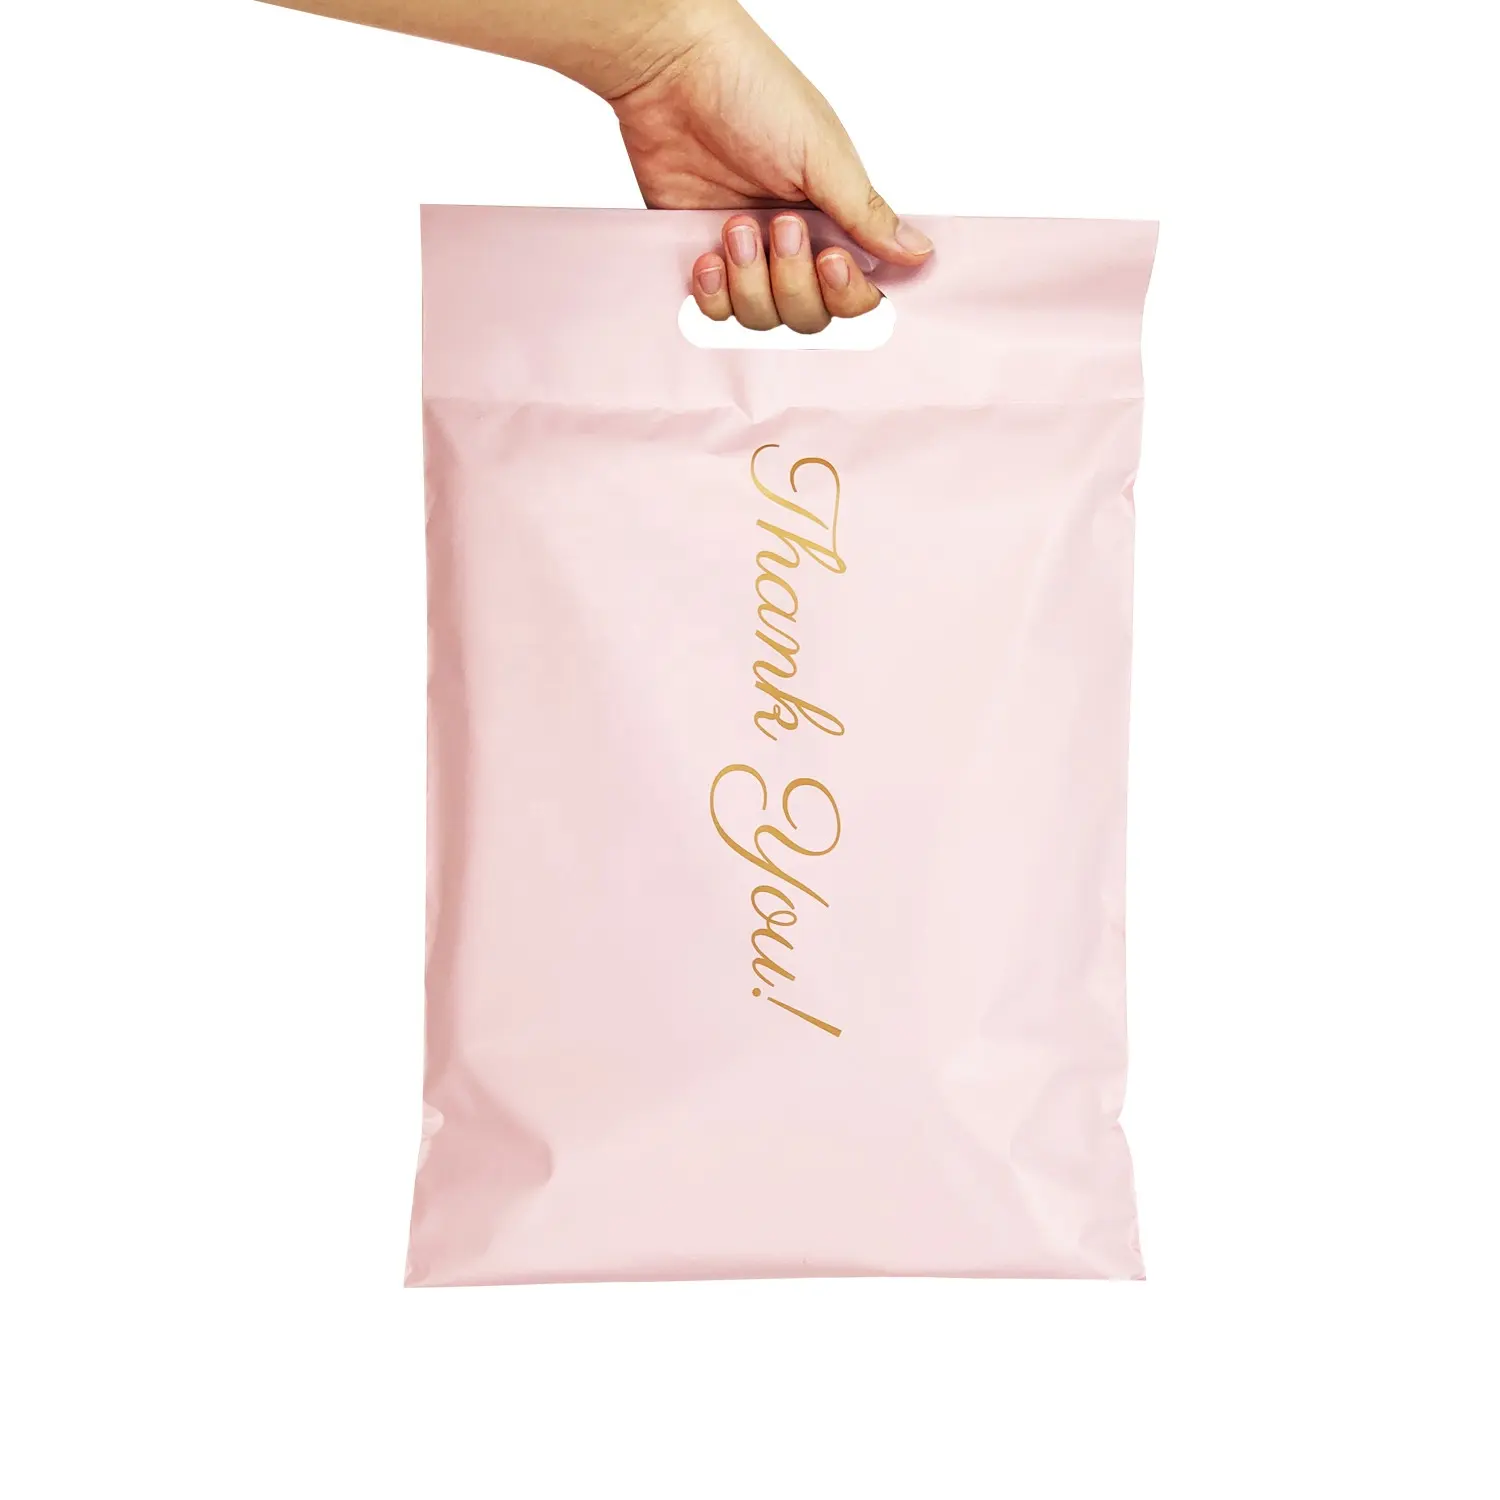 Индивидуальный принт, индивидуальный дизайн логотипа, розовые большие водонепроницаемые пластиковые пакеты для онлайн-почтовых отправлений, розничных магазинов, экспресс-почт